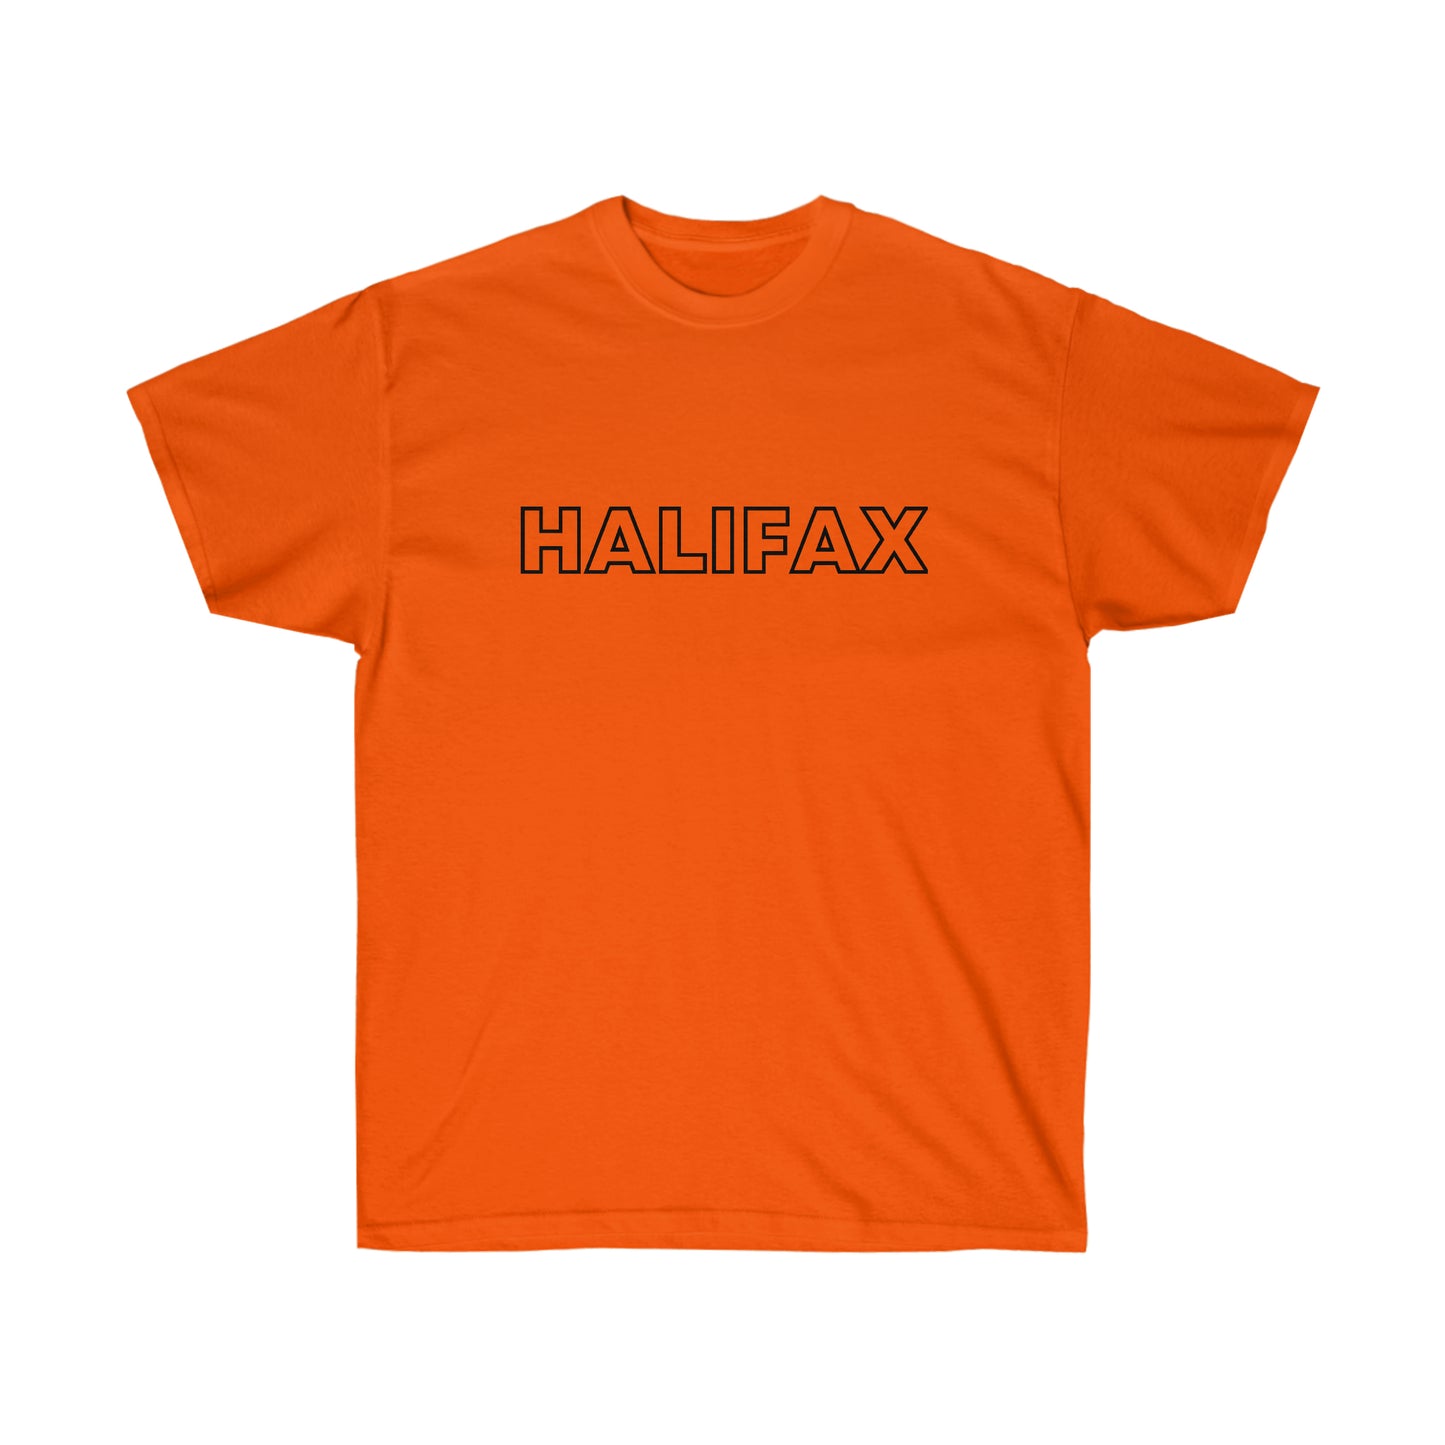 HALIFAX - Unisex Ultra Cotton Tee